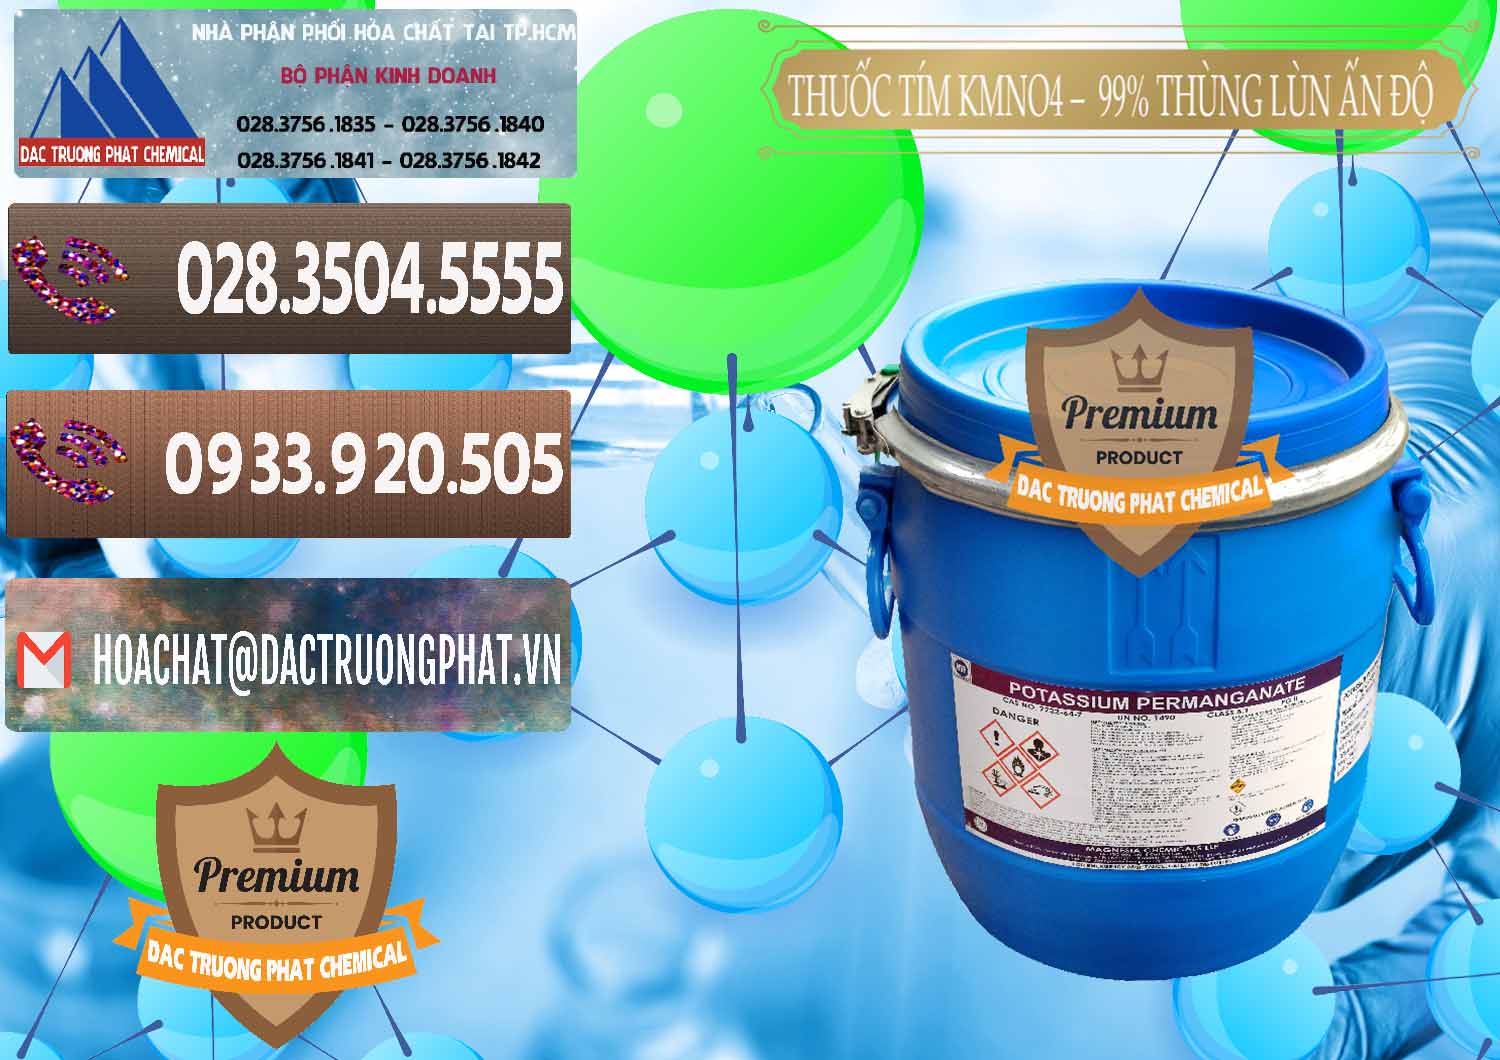 Cty chuyên cung ứng _ bán Thuốc Tím - KMNO4 Thùng Lùn 99% Magnesia Chemicals Ấn Độ India - 0165 - Phân phối và bán hóa chất tại TP.HCM - hoachatviet.net